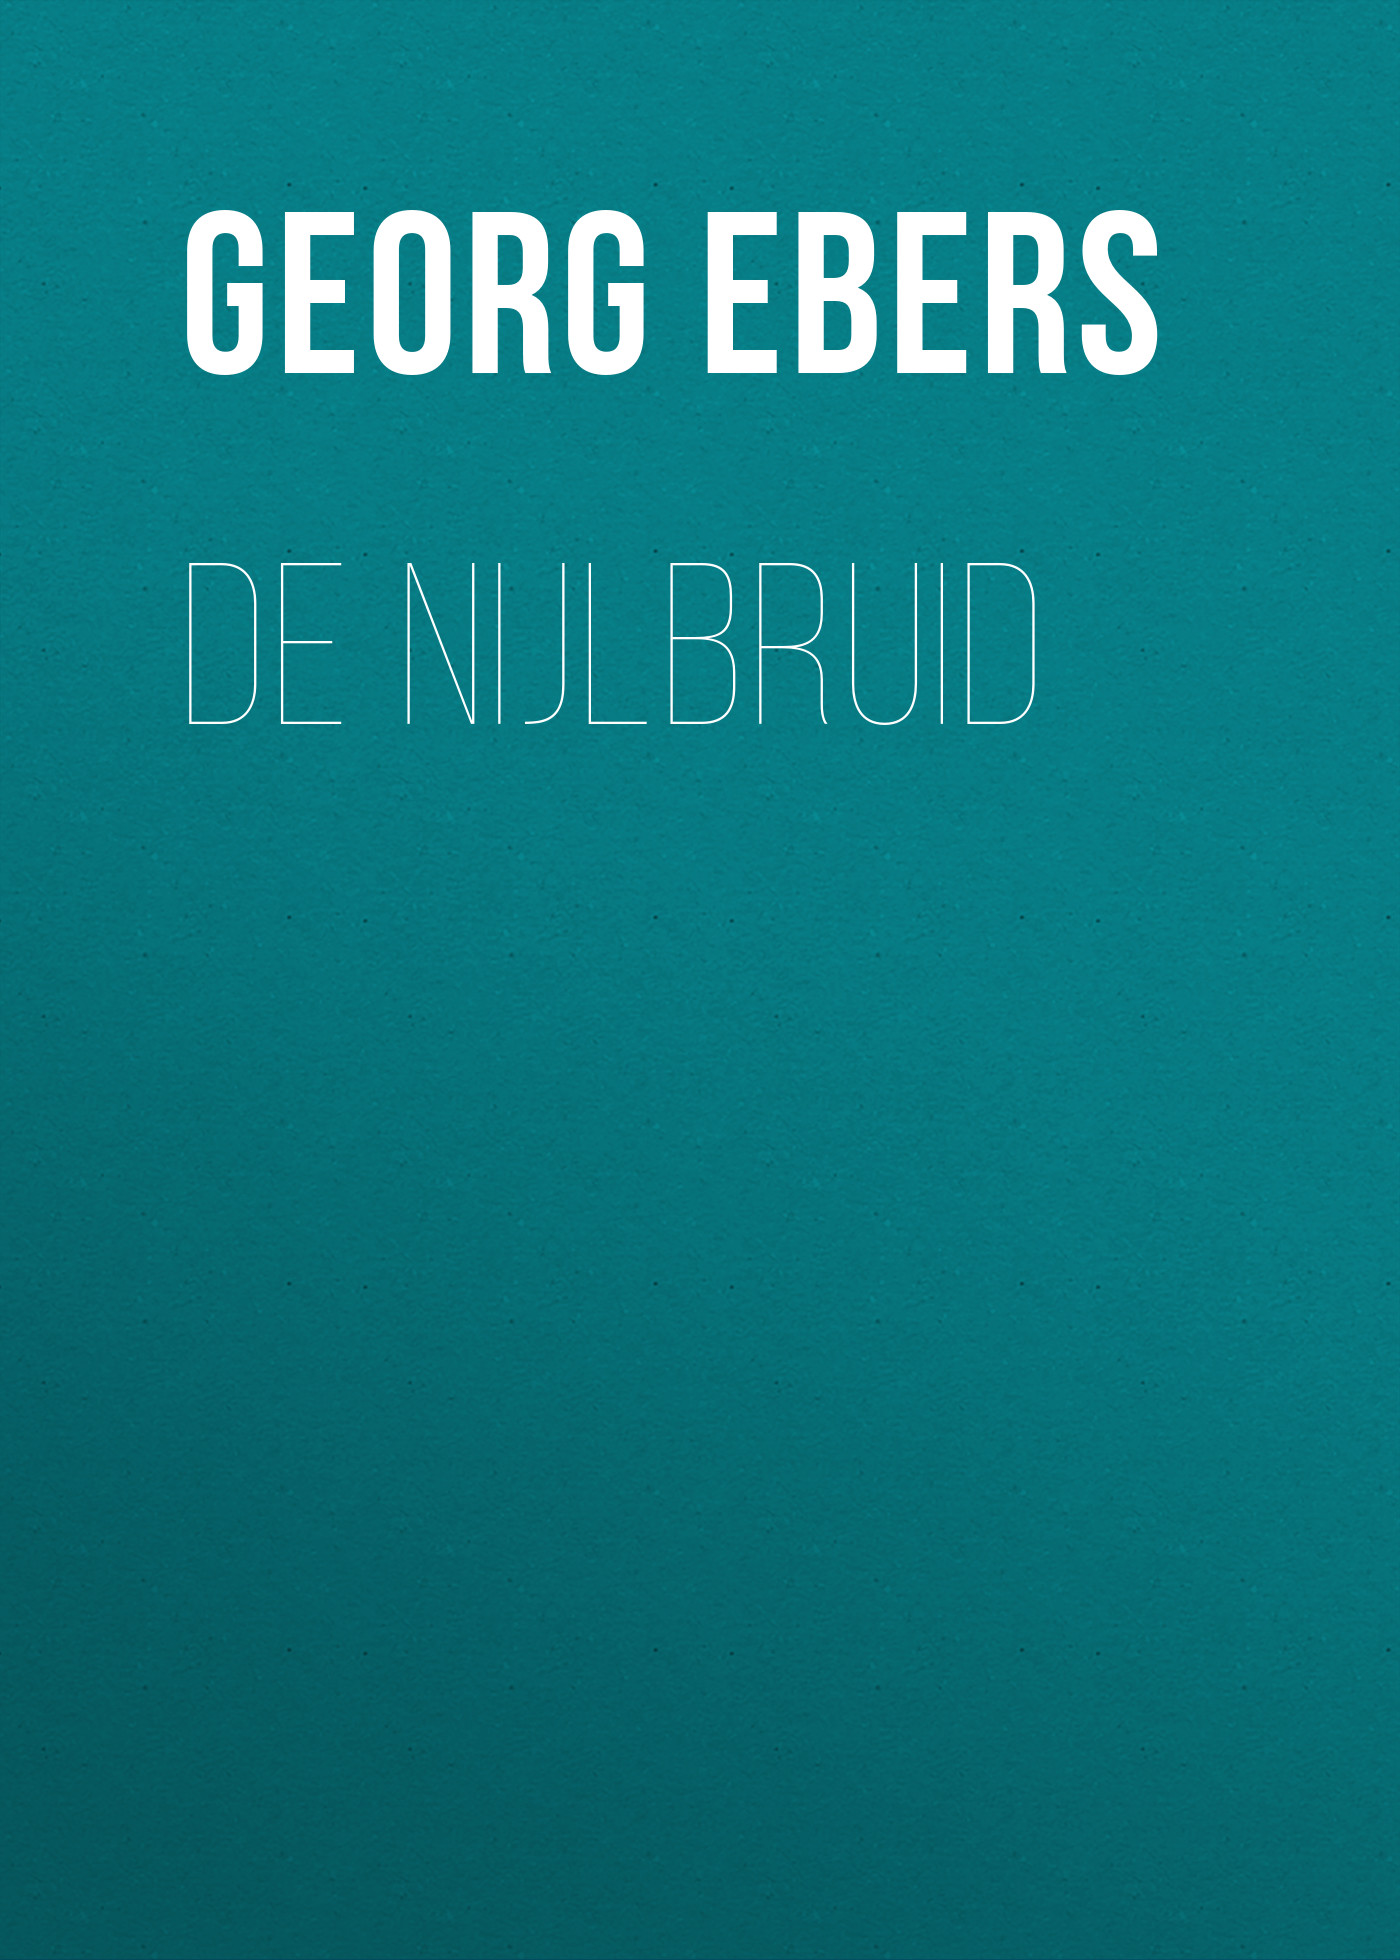 Книга De nijlbruid из серии , созданная Georg Ebers, может относится к жанру Зарубежная старинная литература, Зарубежная классика. Стоимость электронной книги De nijlbruid с идентификатором 24621125 составляет 0 руб.